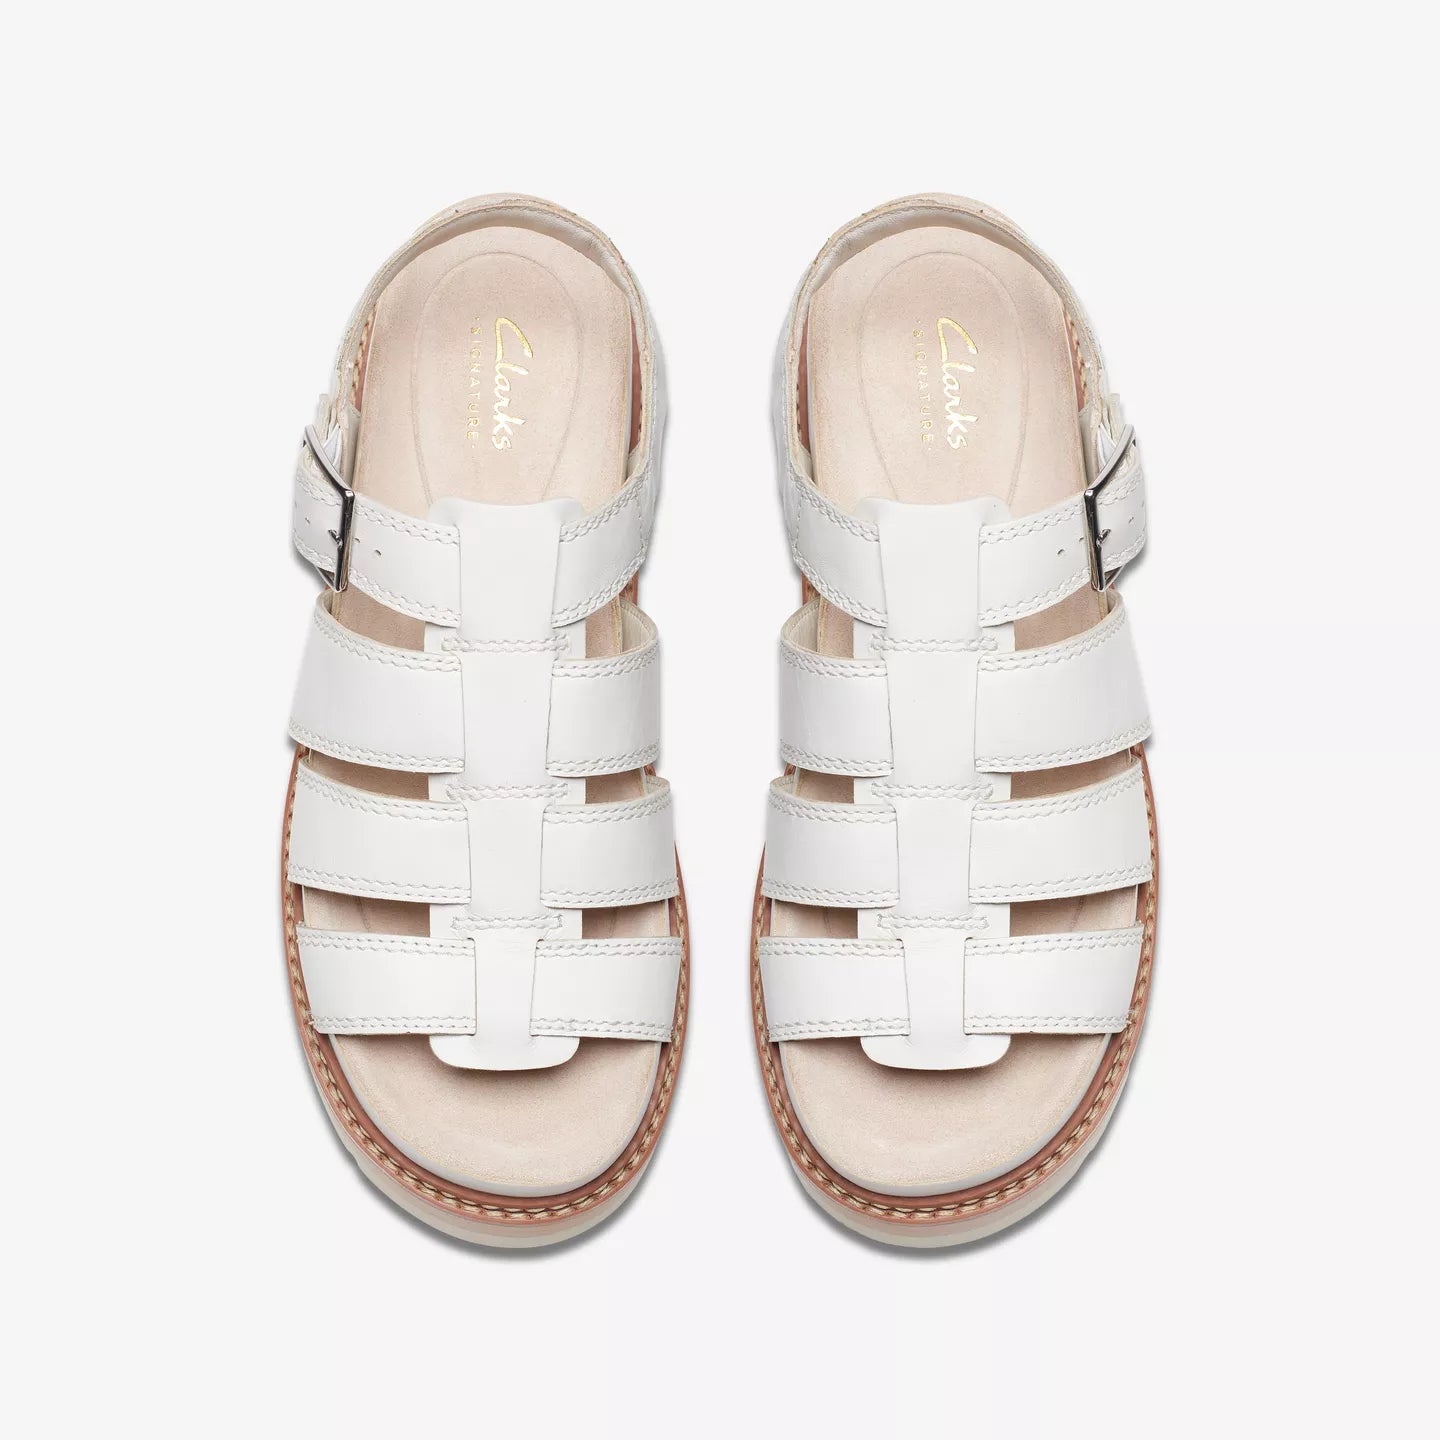 Clarks Orianna Twist Off White Leather Sandals